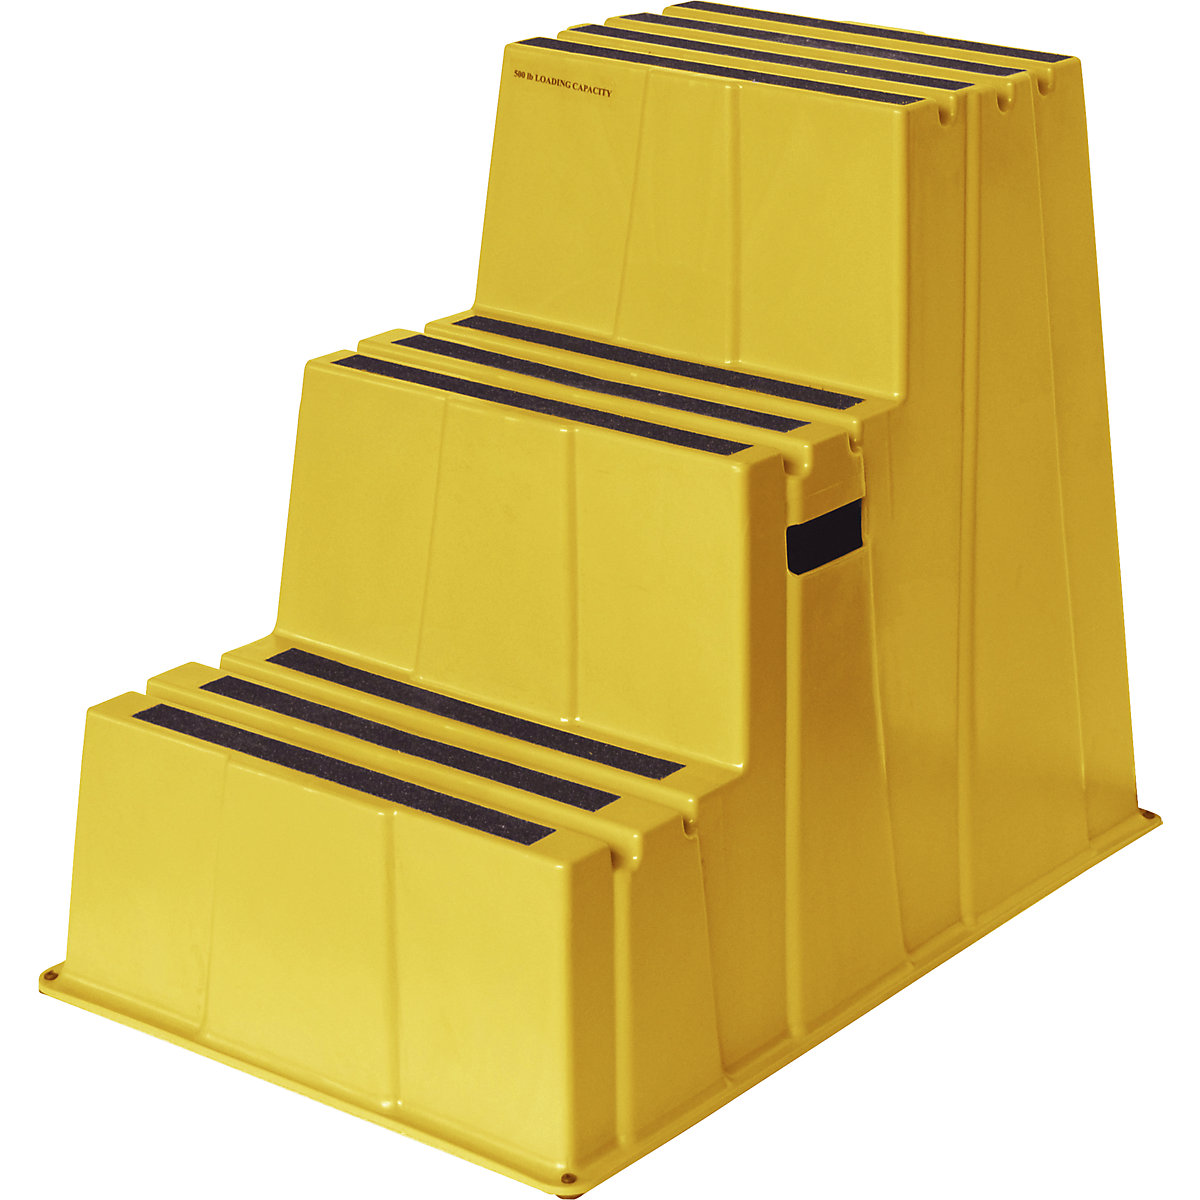 Degrau em plástico antiderrapante – Twinco, capacidade de carga 150 kg, 3 degraus, amarelo-3